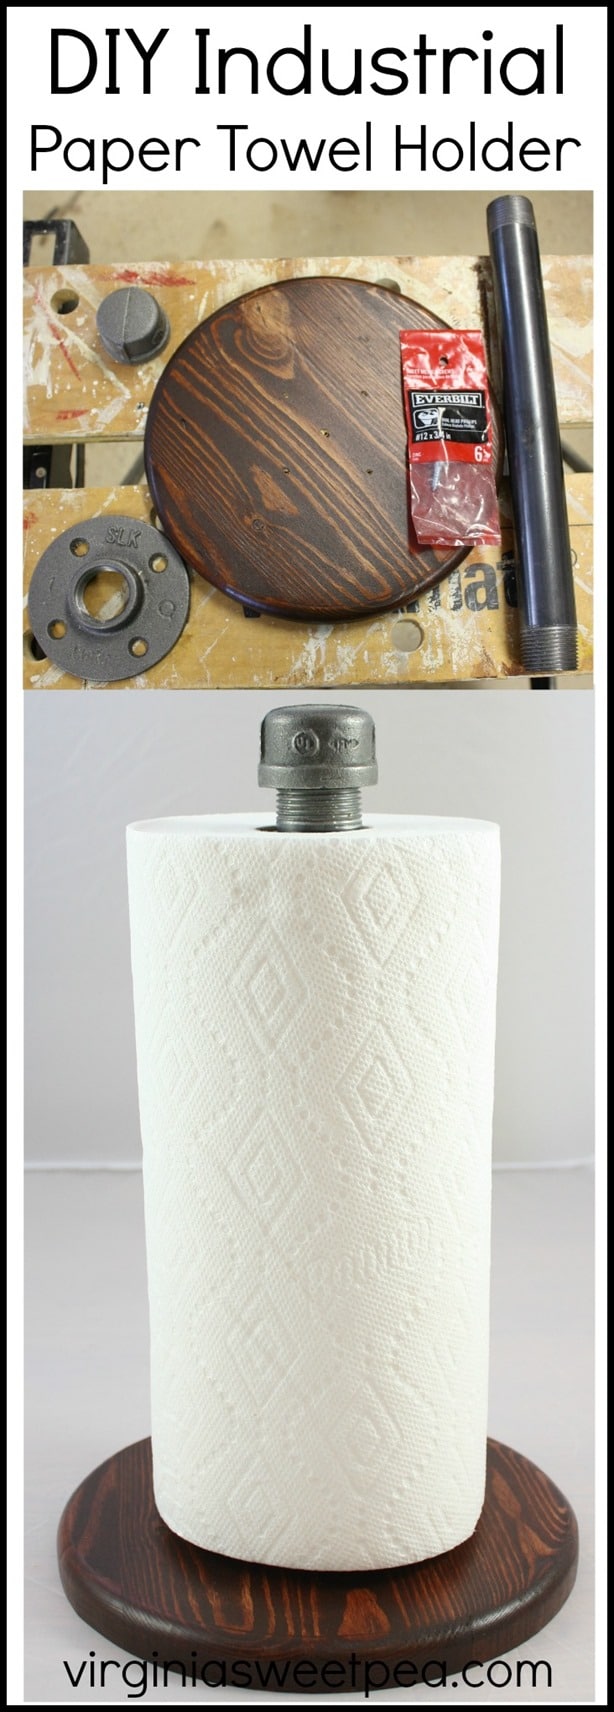 DIY Industrial Paper Towel Holder by virginiasweetpea.com